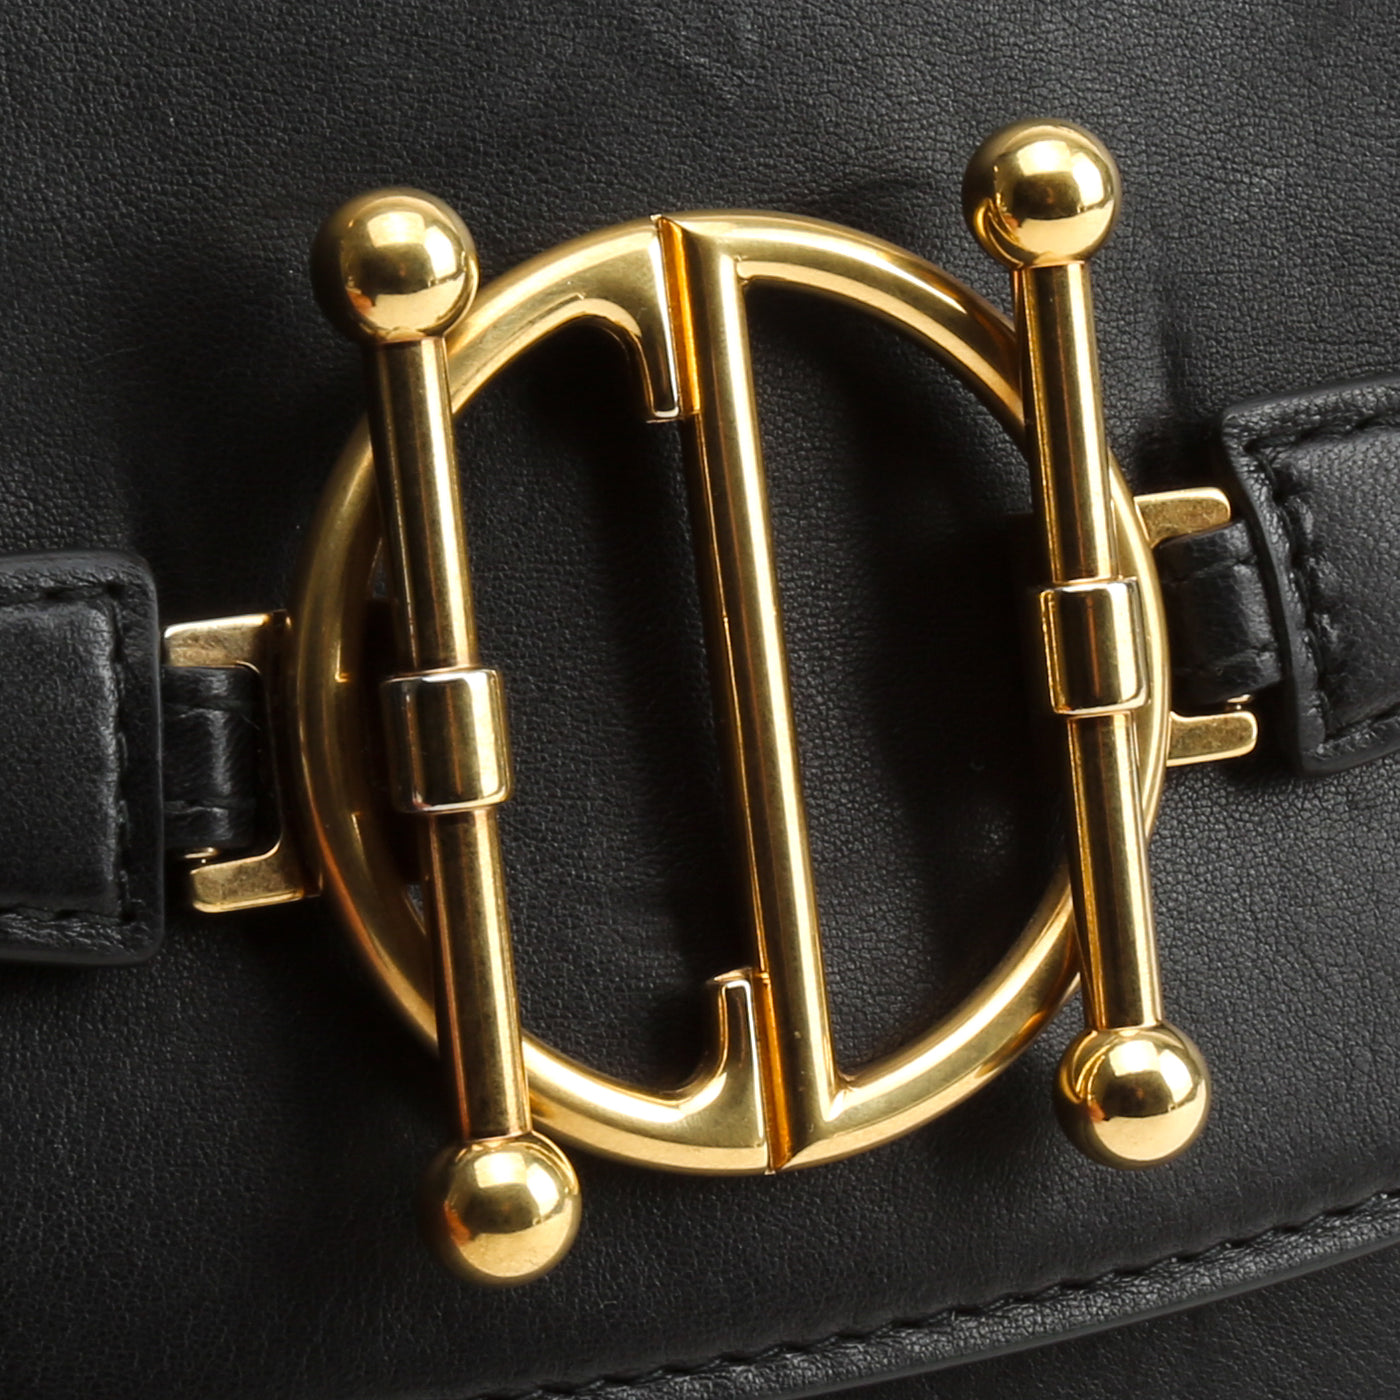 CHRISTIAN DIOR Calfskin DiorDirection Flap Bag - Black OUTLET FINAL SALE